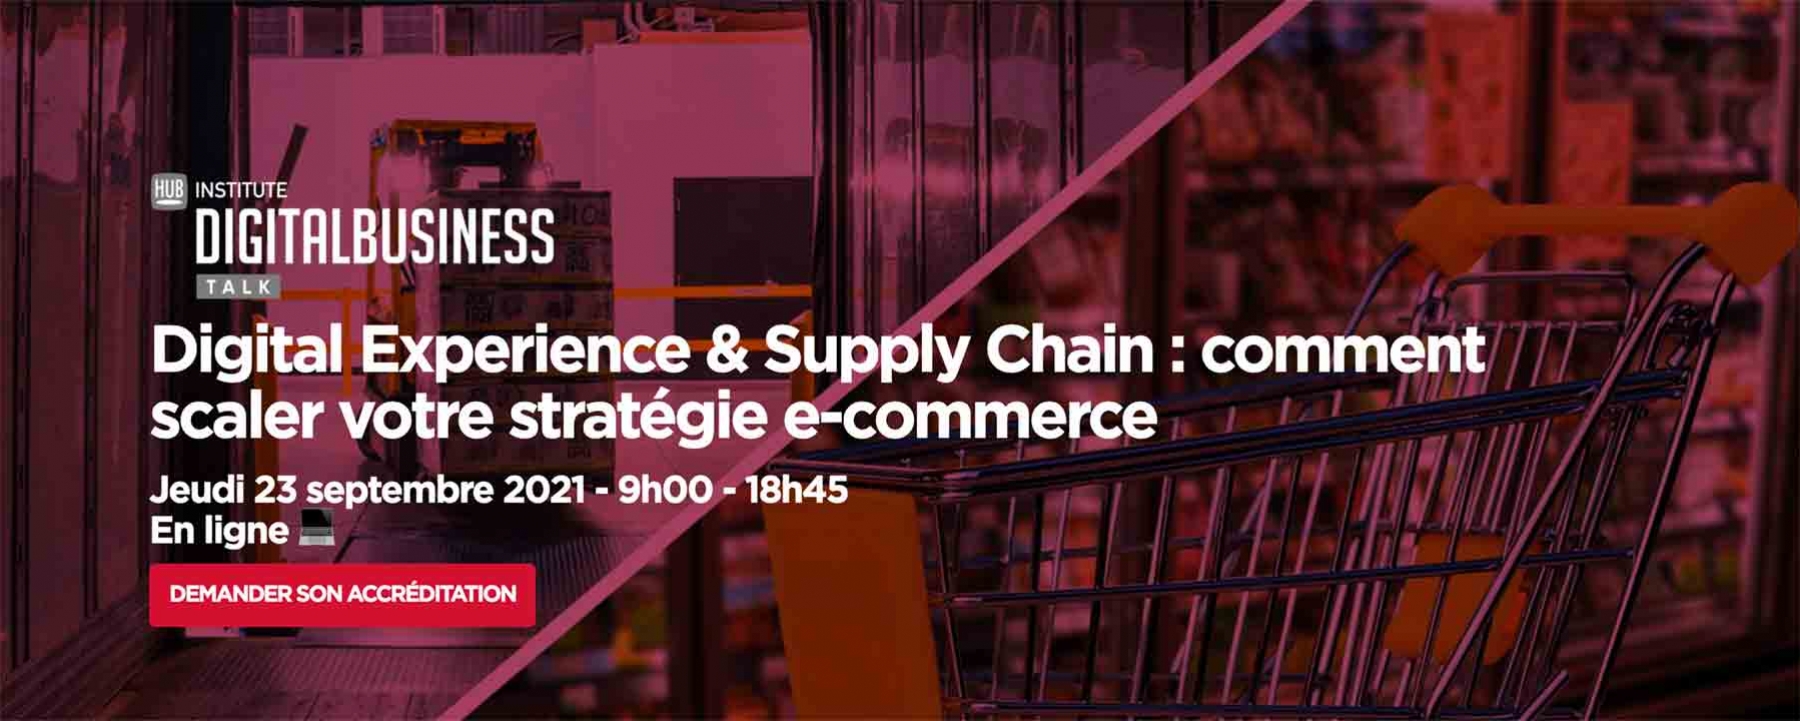 Digital Experience & Supply Chain : comment scaler votre stratégie e-commerce le 23 septembre 2021 en ligne